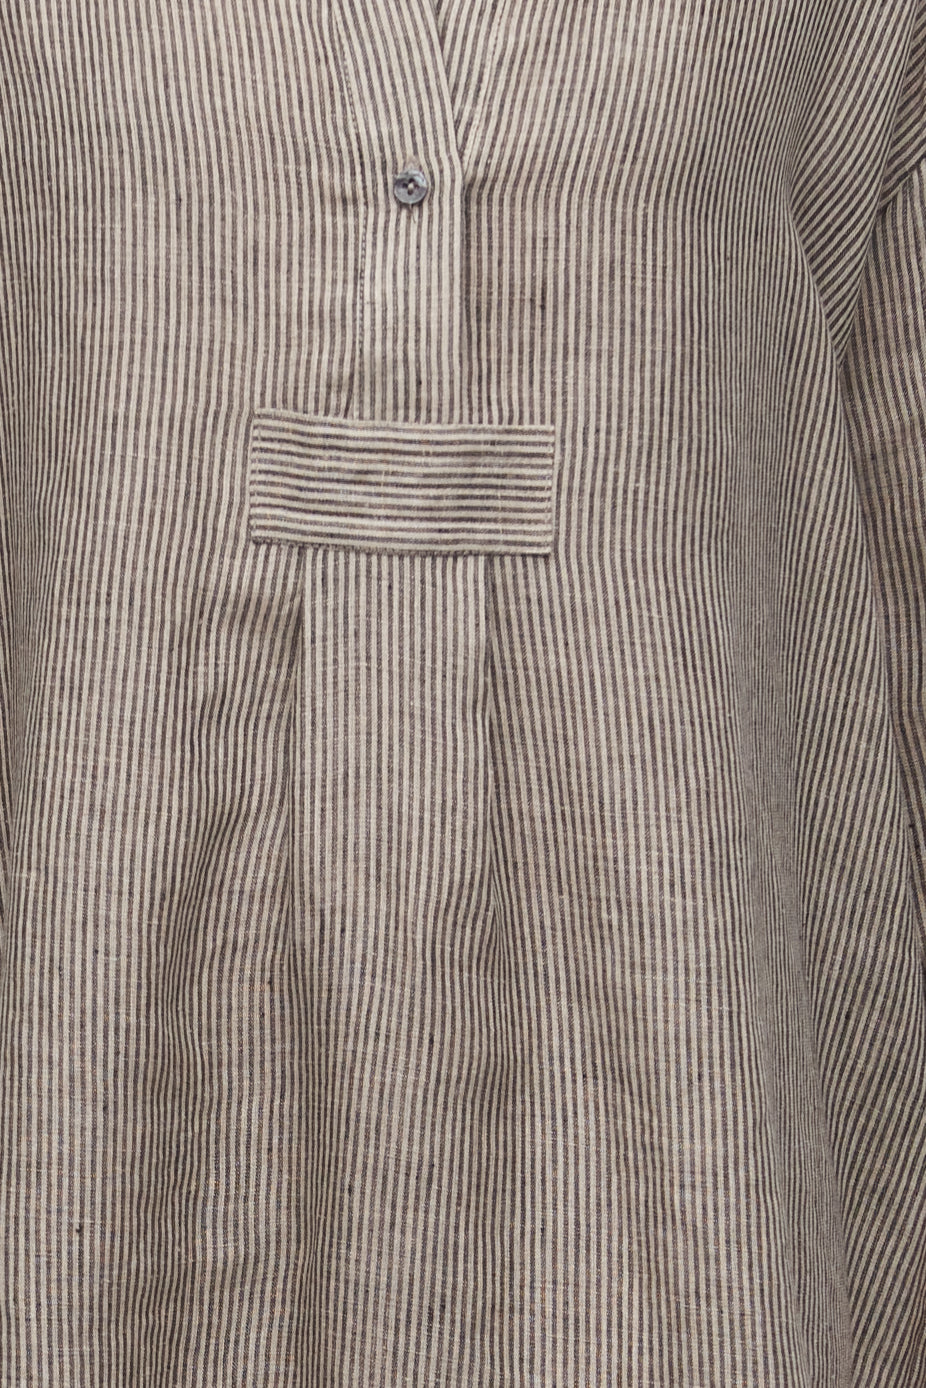 Short Sleep Shirt Black Natural Linen Stripe